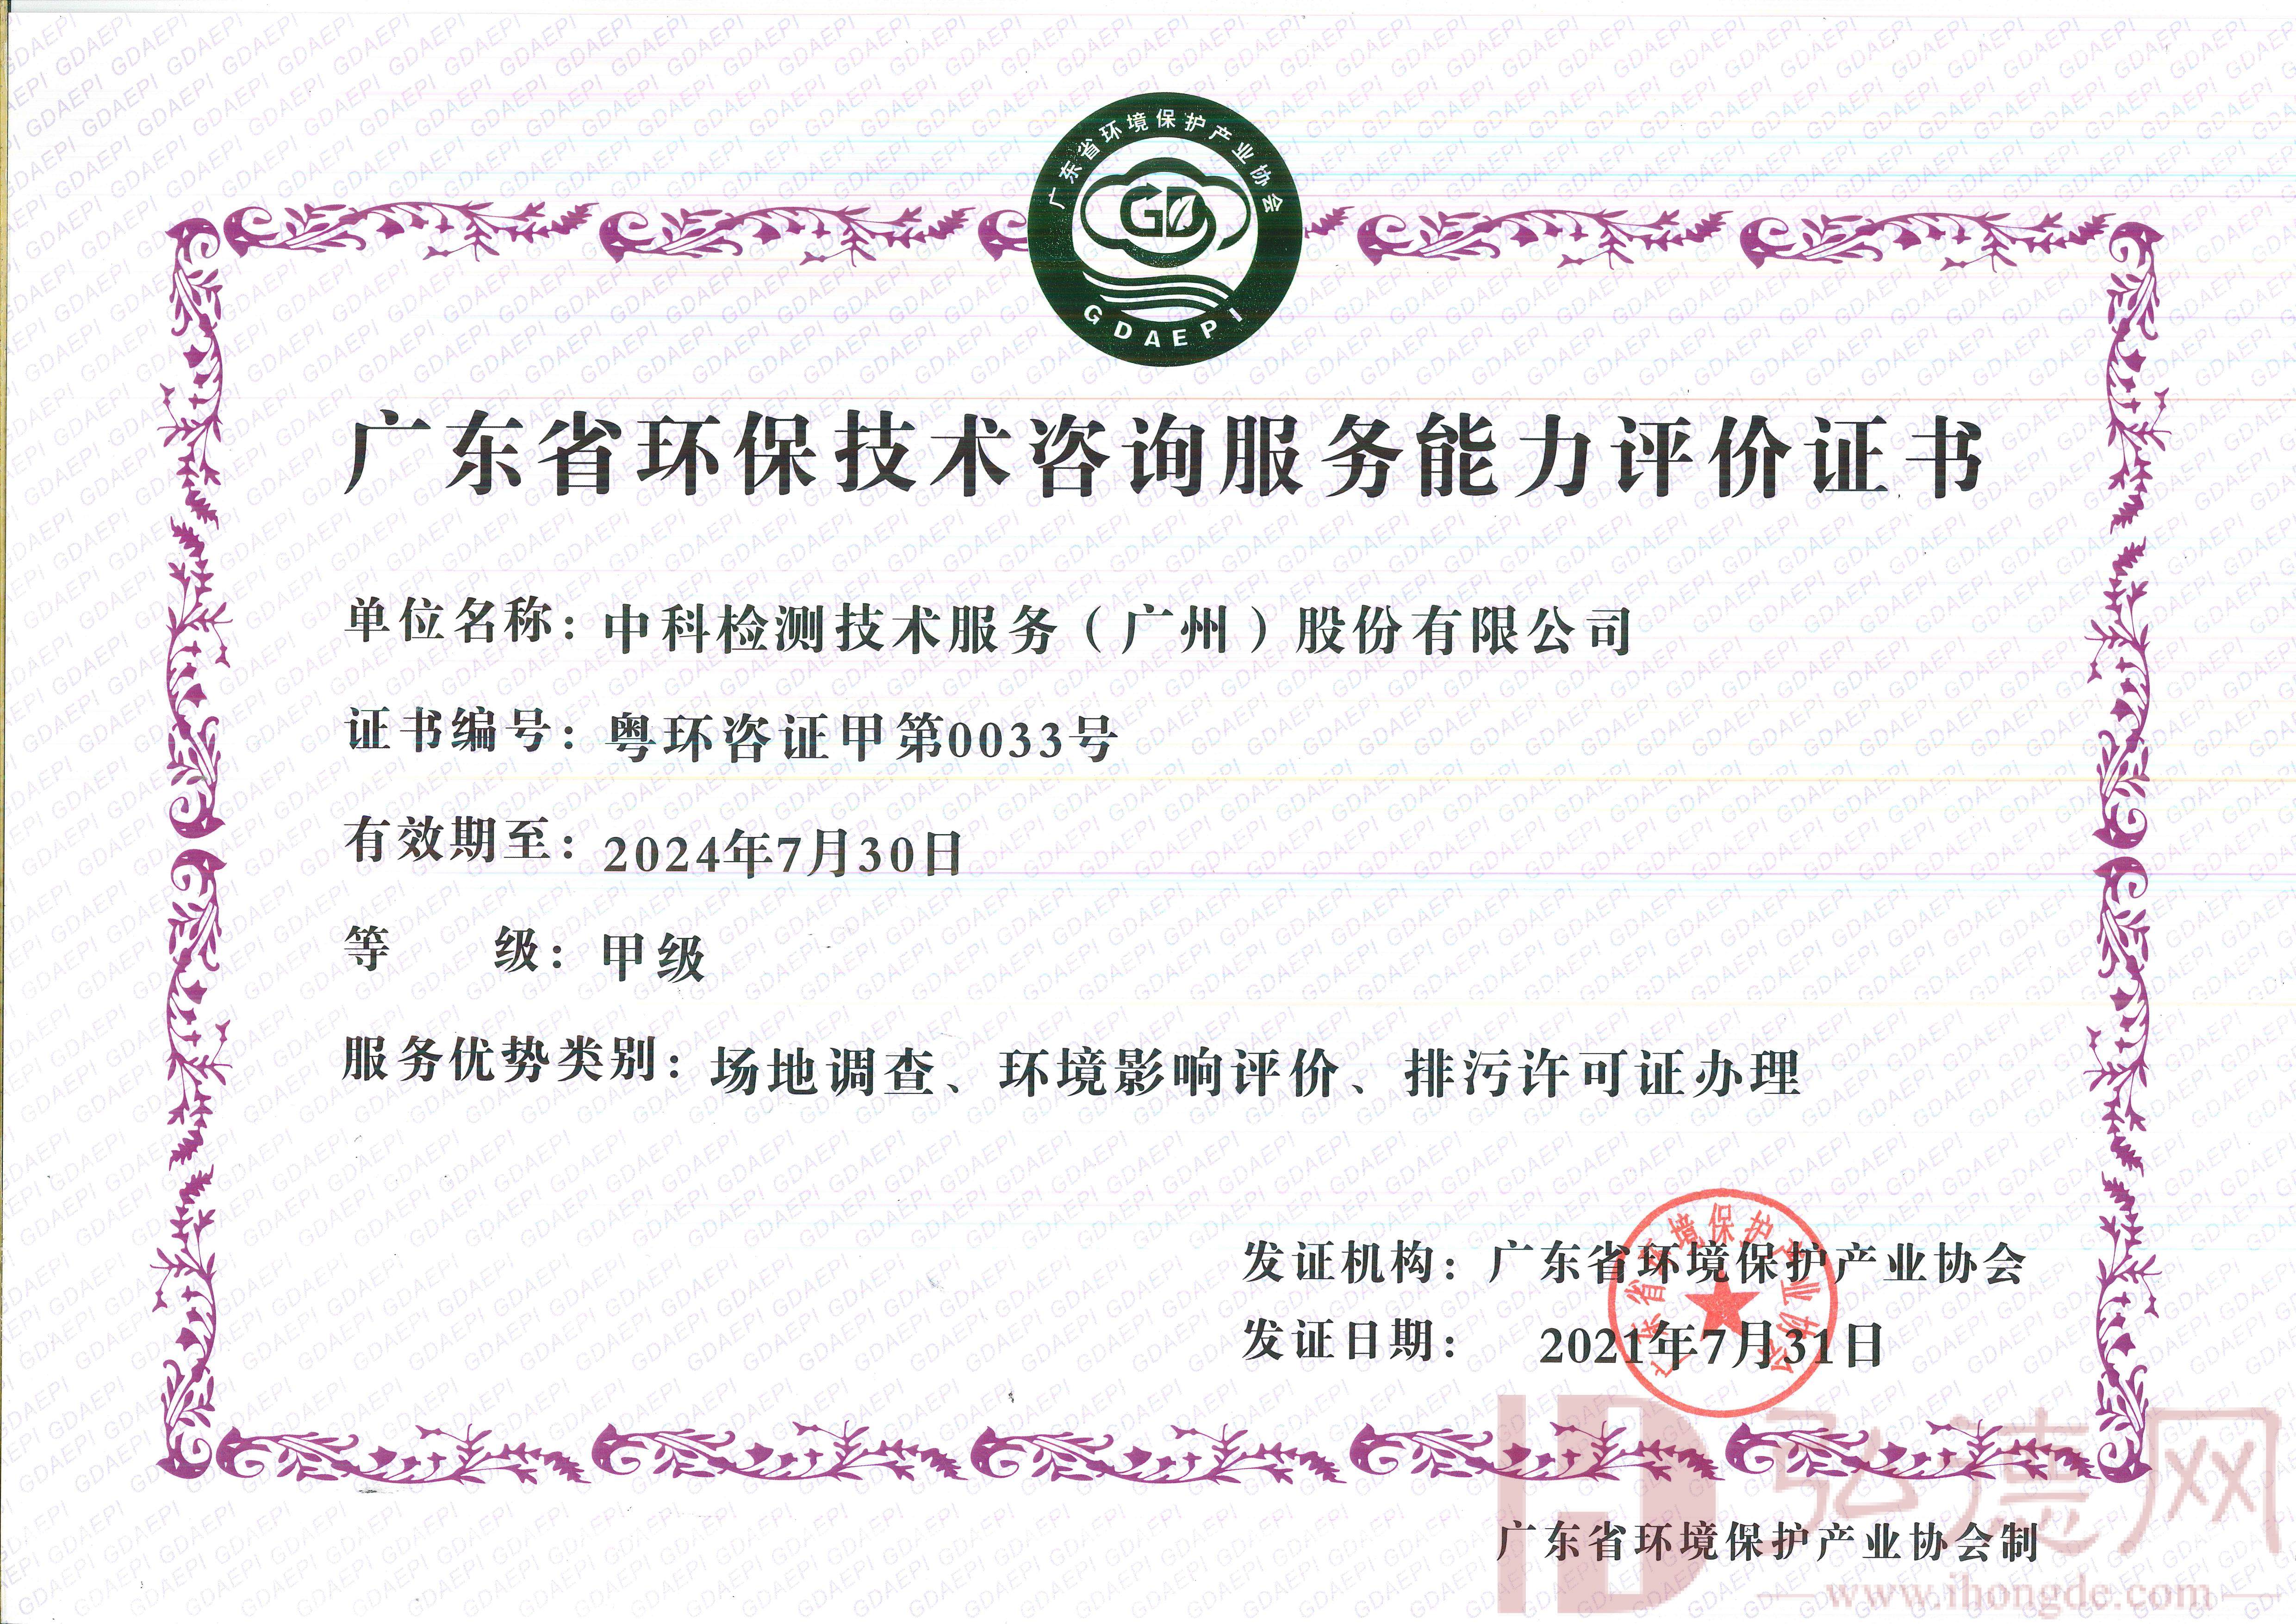 广东省环保技术咨询服务能力评价证书